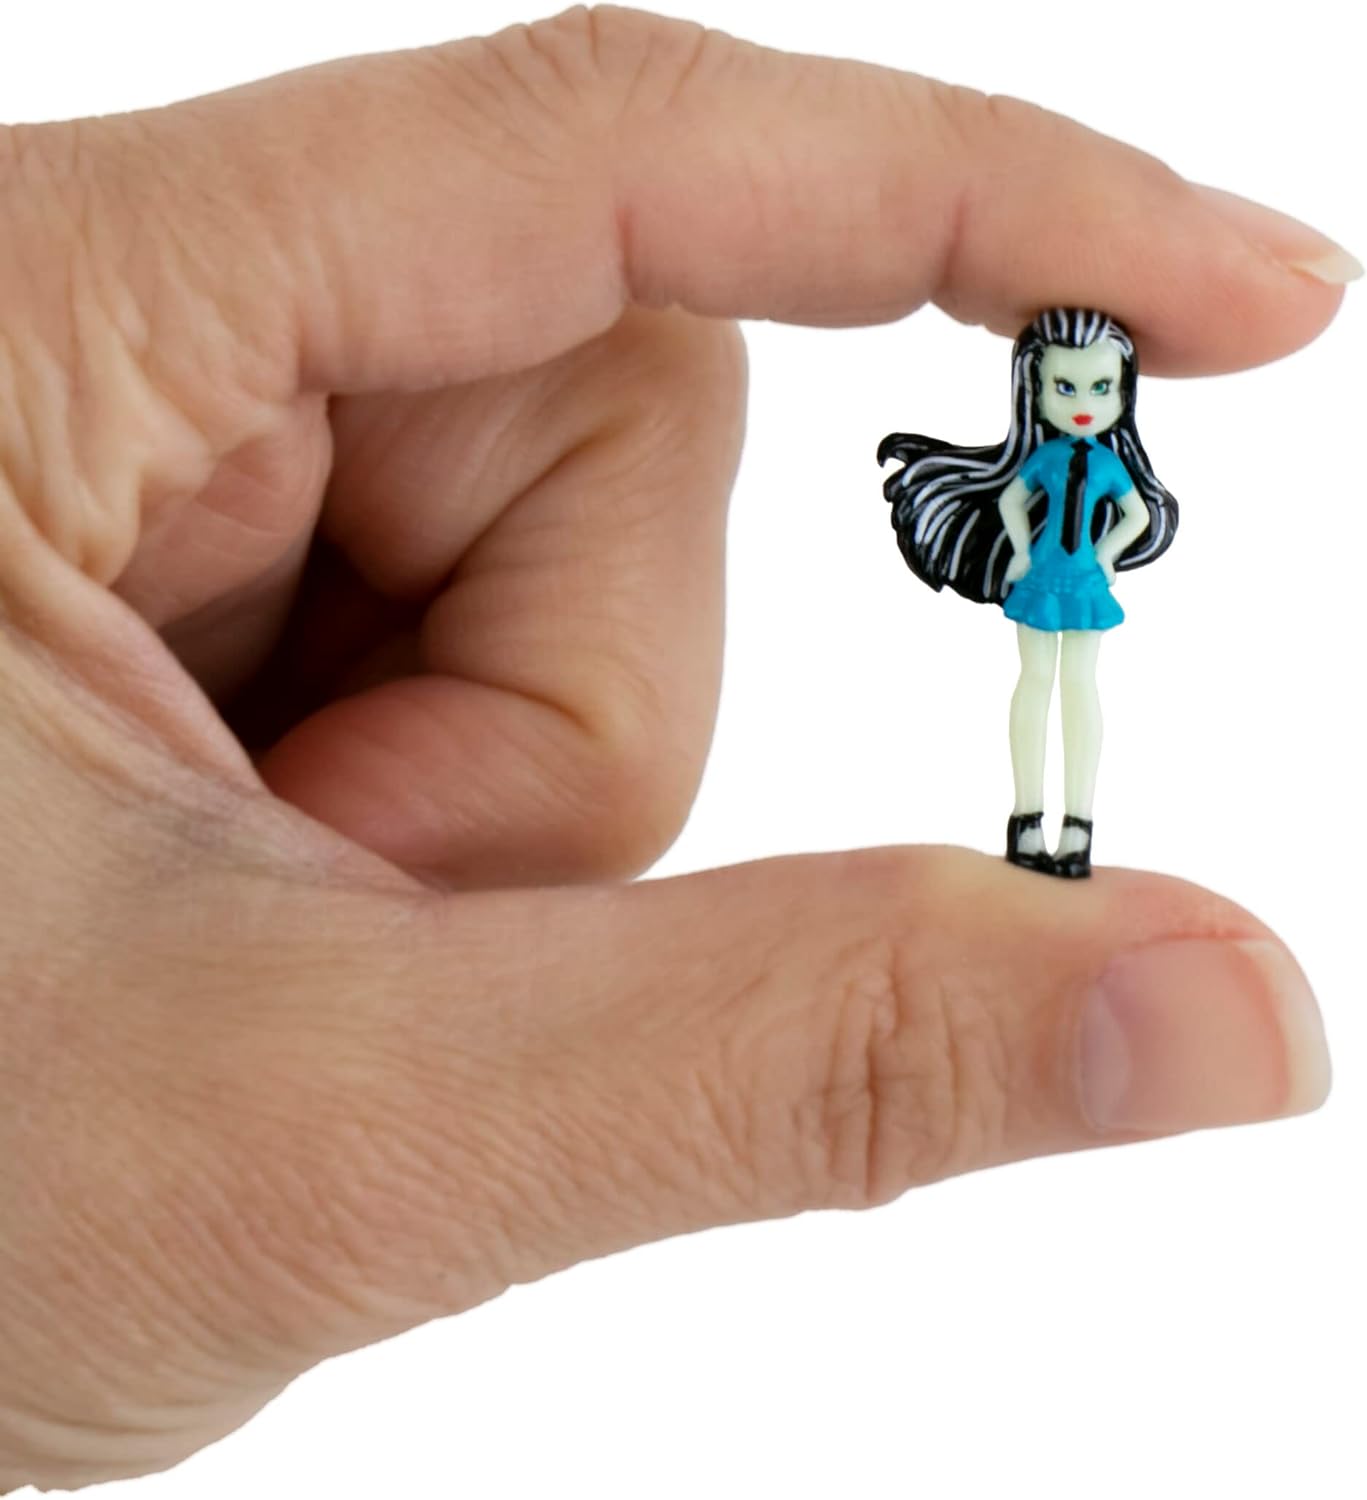 World's Smallest Monster High Dolls